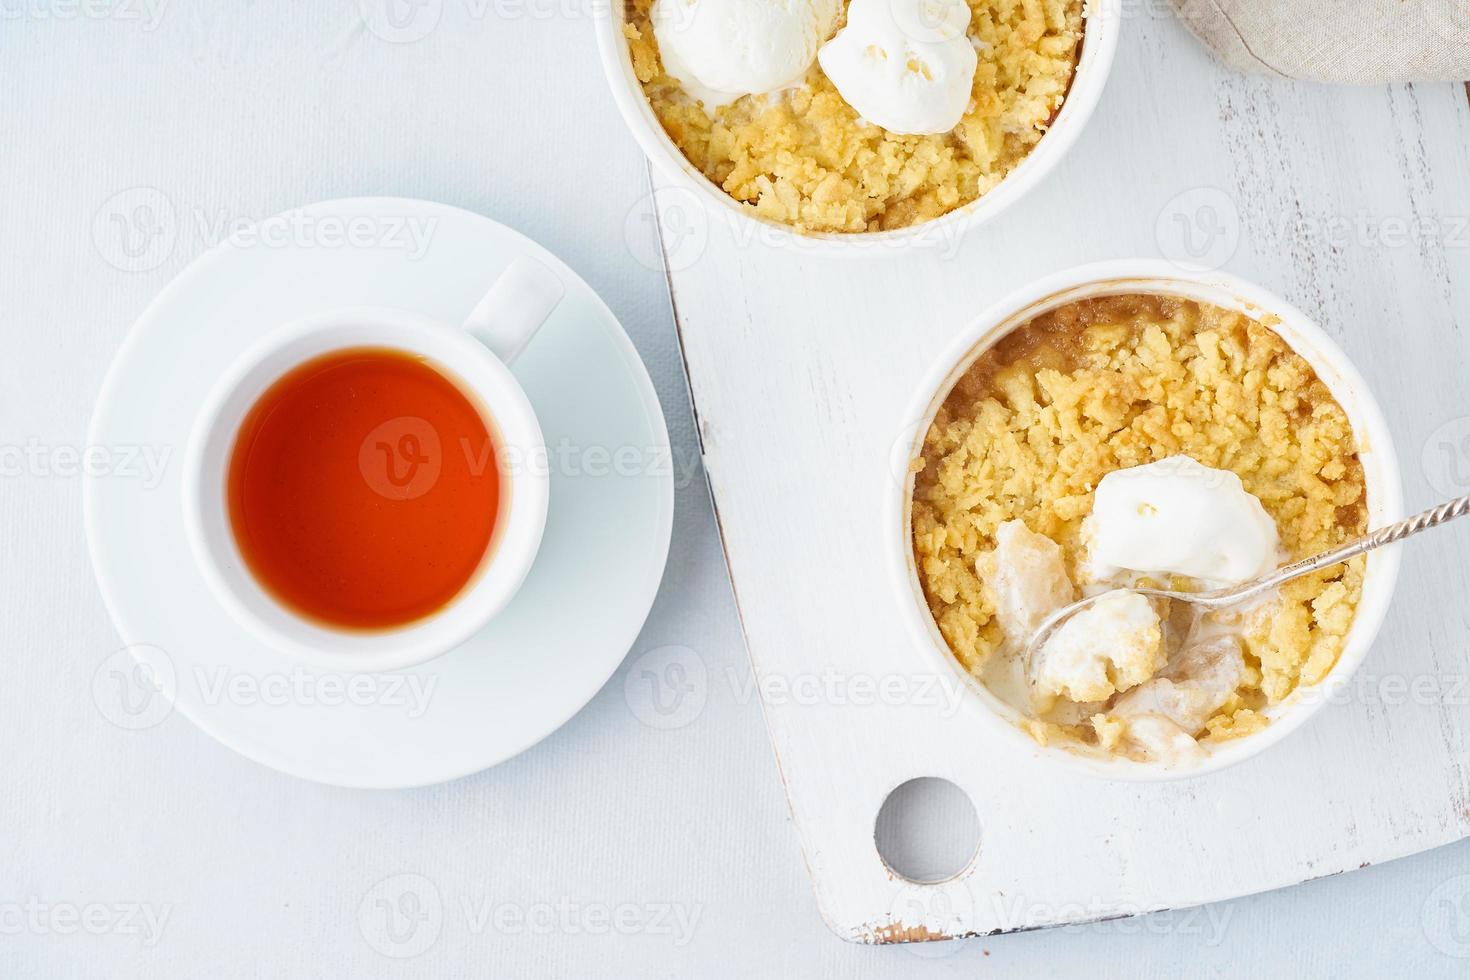 appelcrumble met ijs, streusel. ochtendontbijt met thee op een lichtgrijze tafel foto